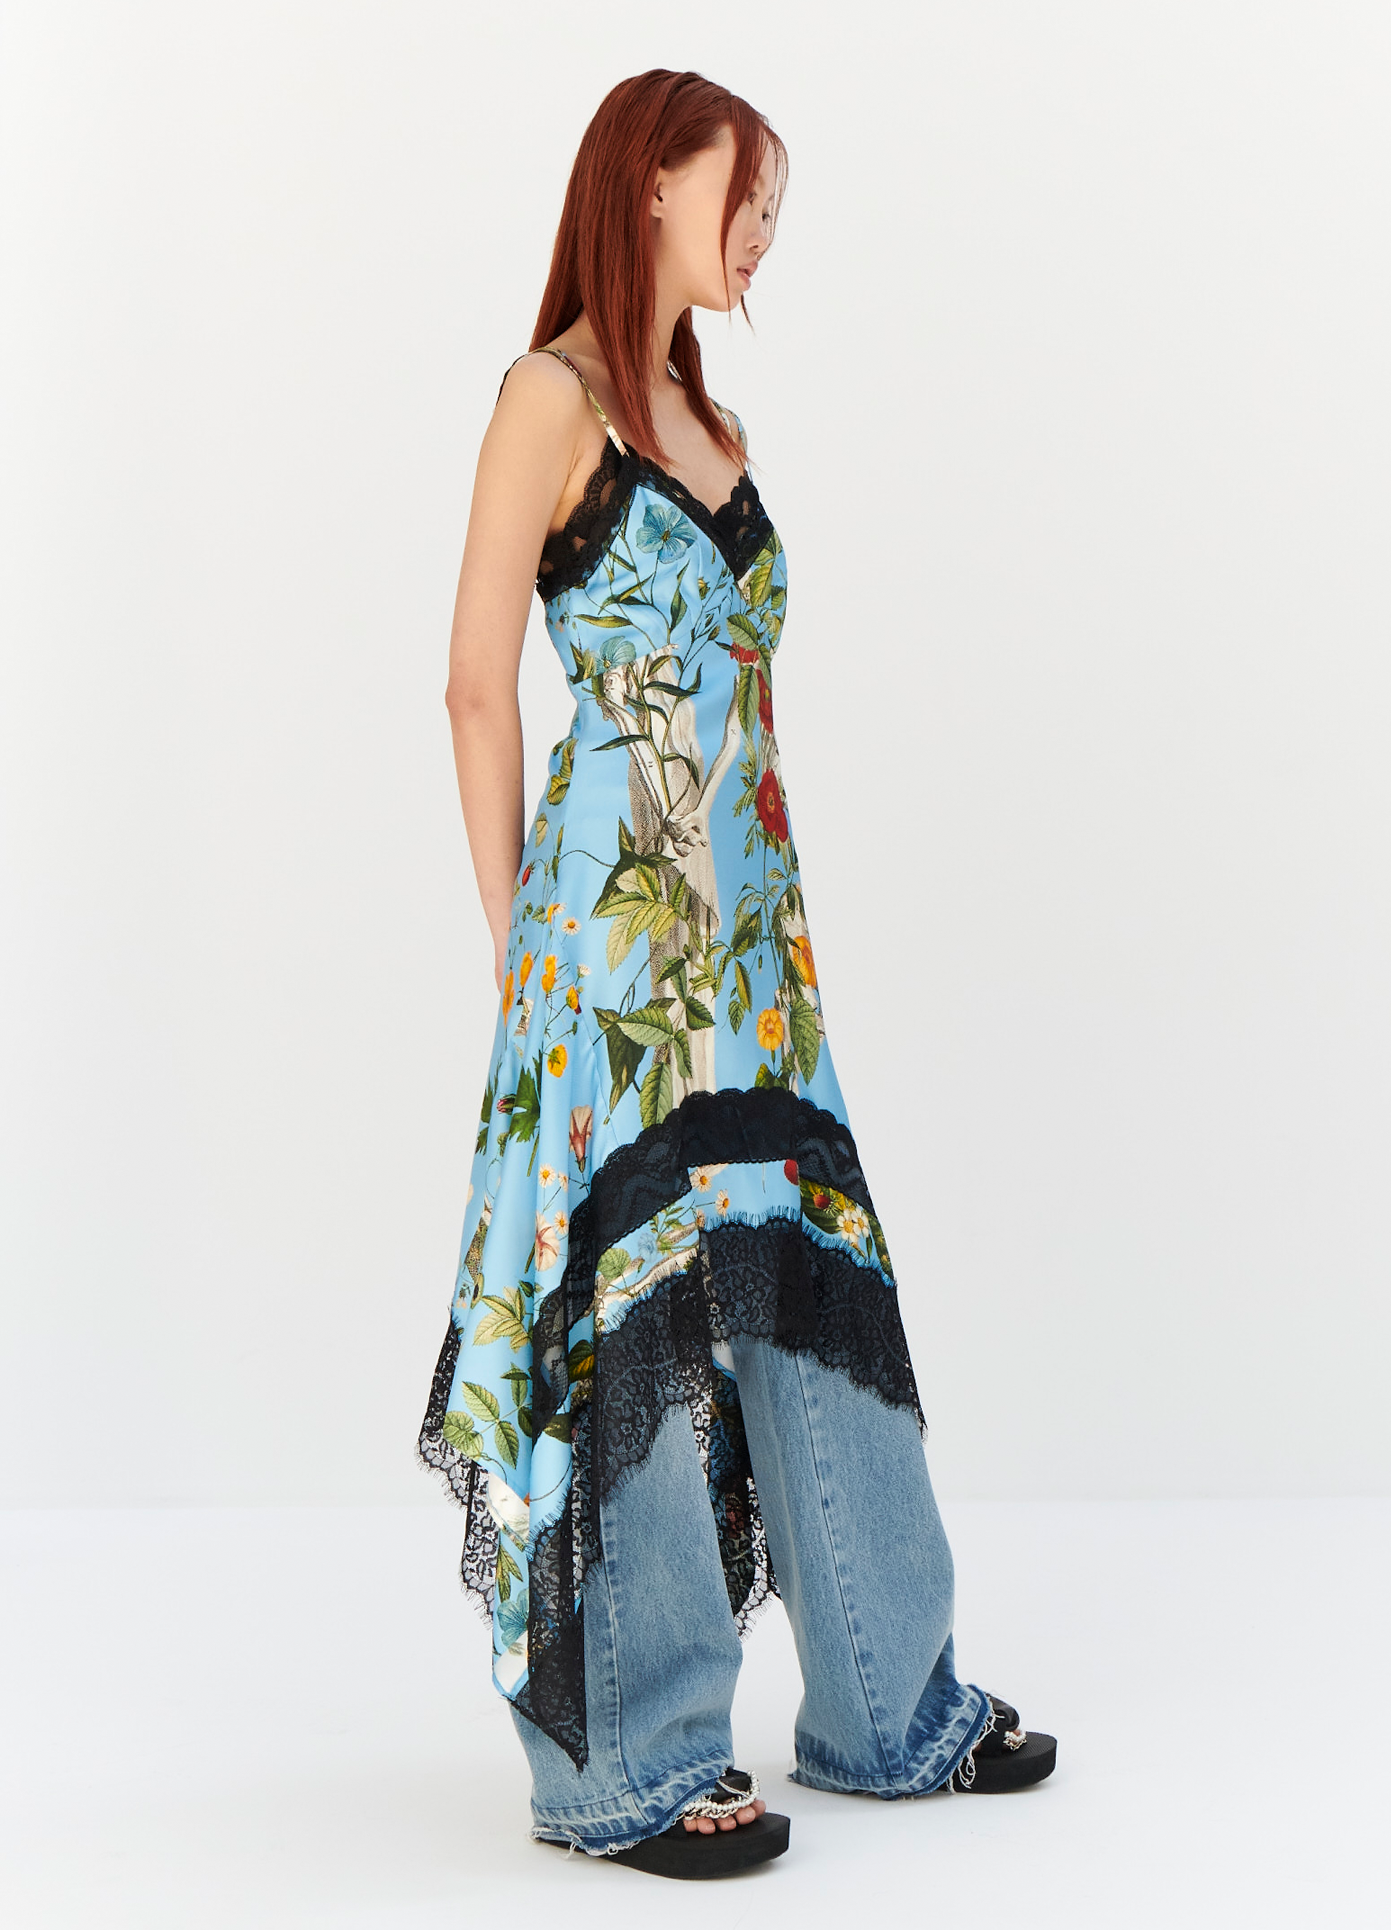 MONSE Floral Skeleton Print Slip Dress in Blue Multi on model full side view